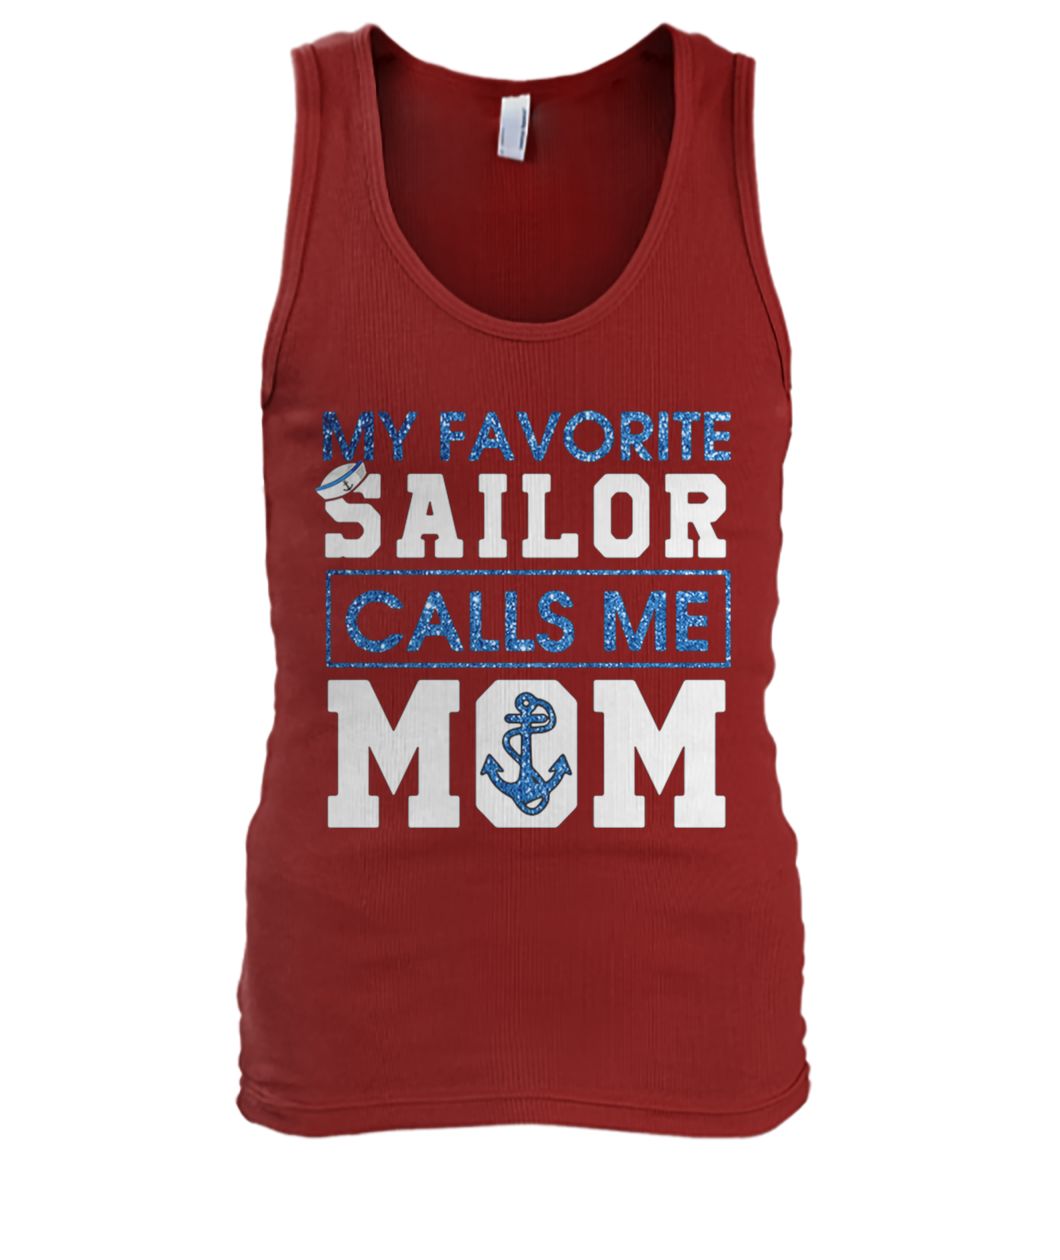 My favorite sailor calls me mom men's tank top